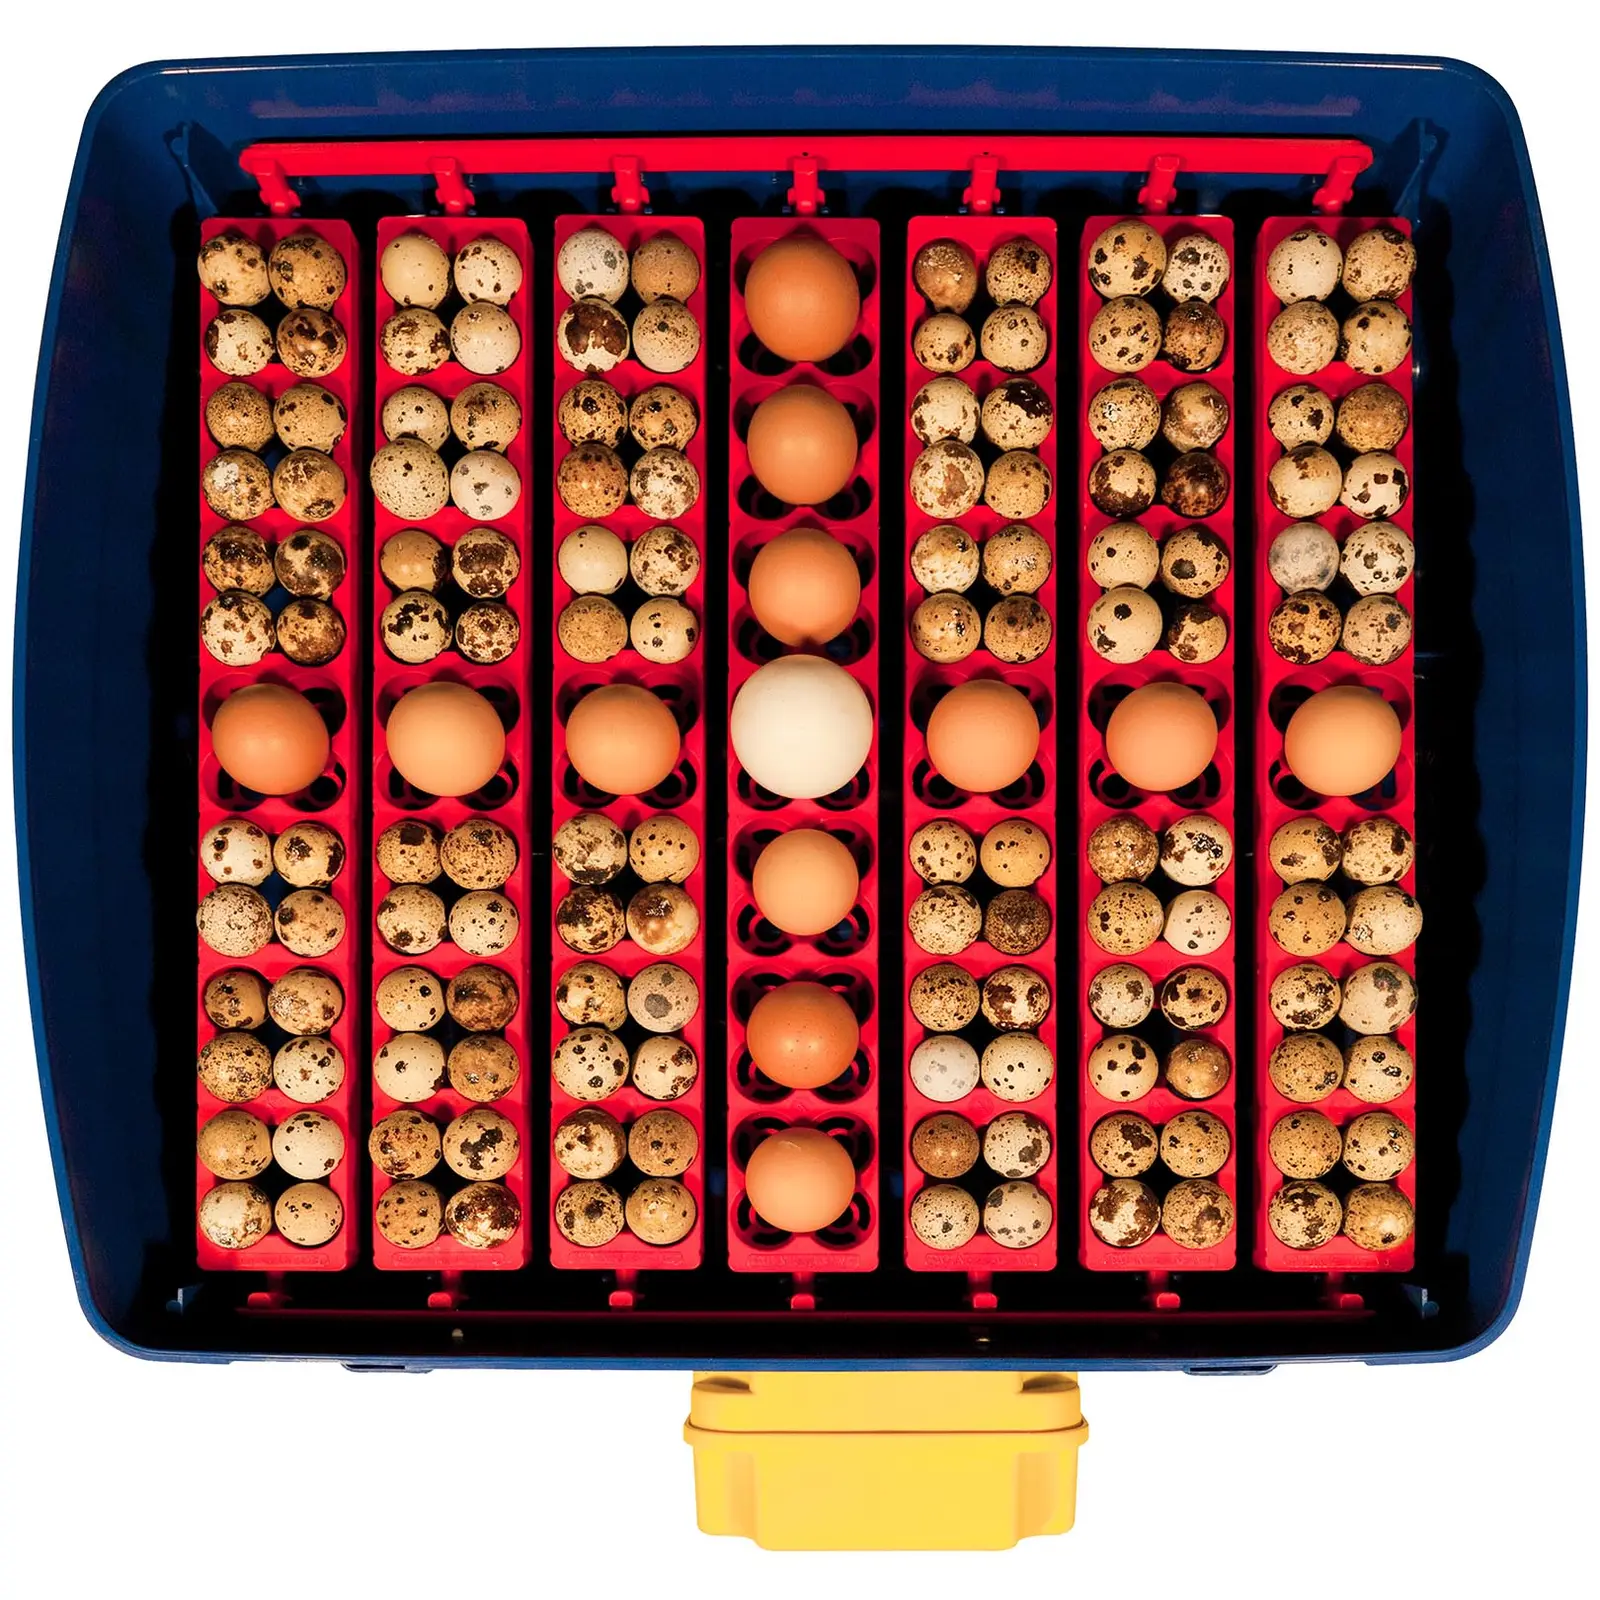 Brutapparat - 49 Eier - inklusive Bewässerungssystem - vollautomatisch